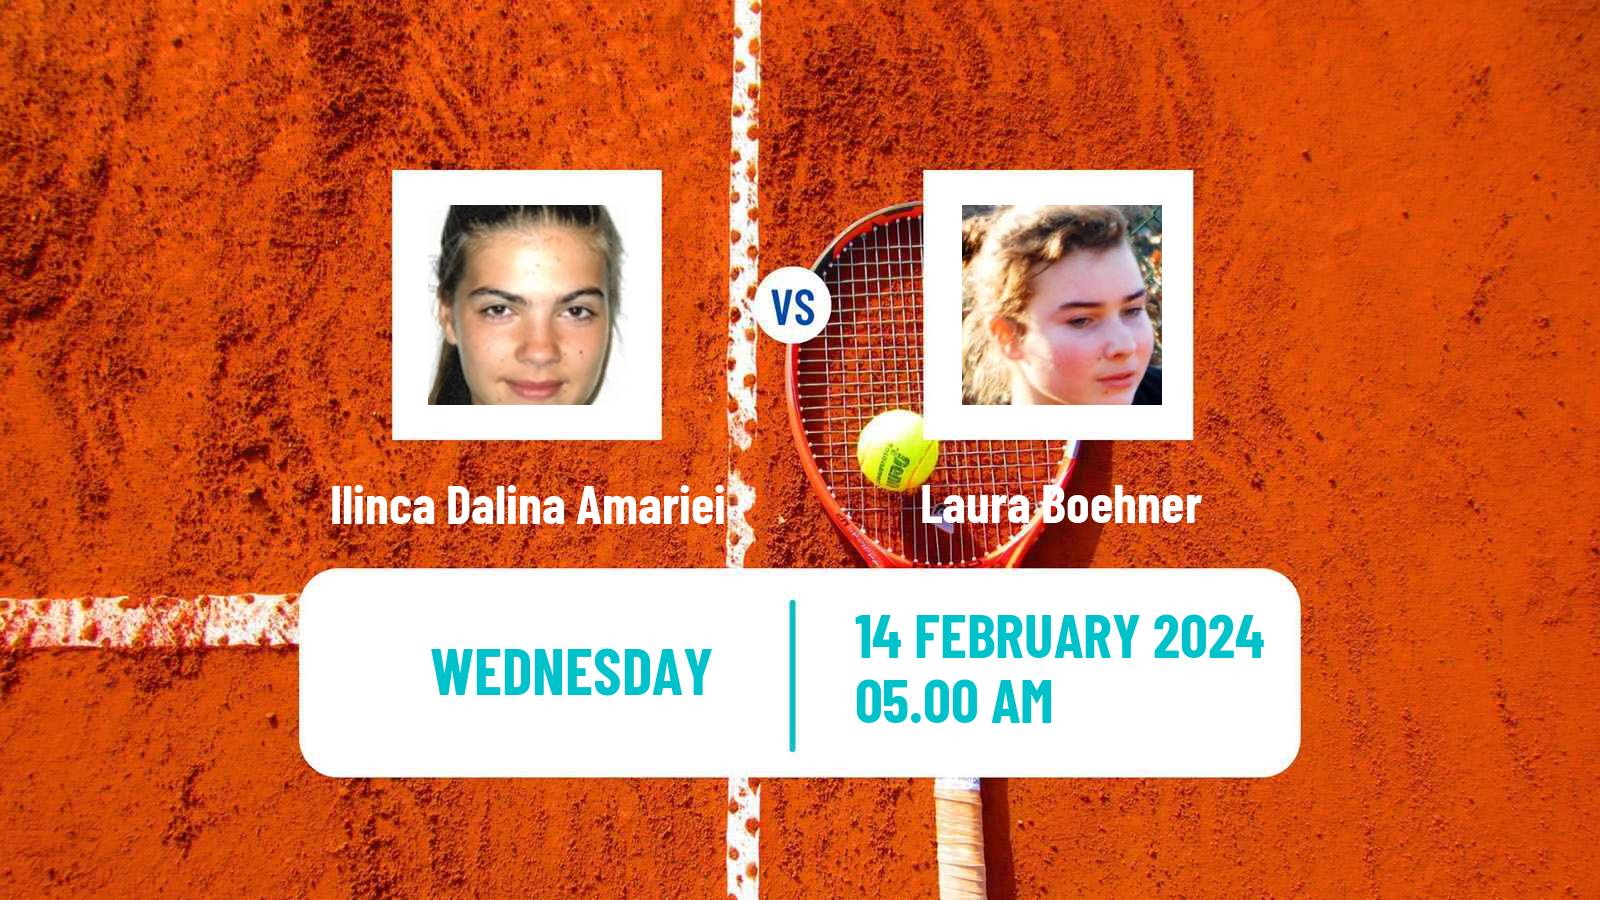 Tennis ITF W35 Hammamet Women Ilinca Dalina Amariei - Laura Boehner